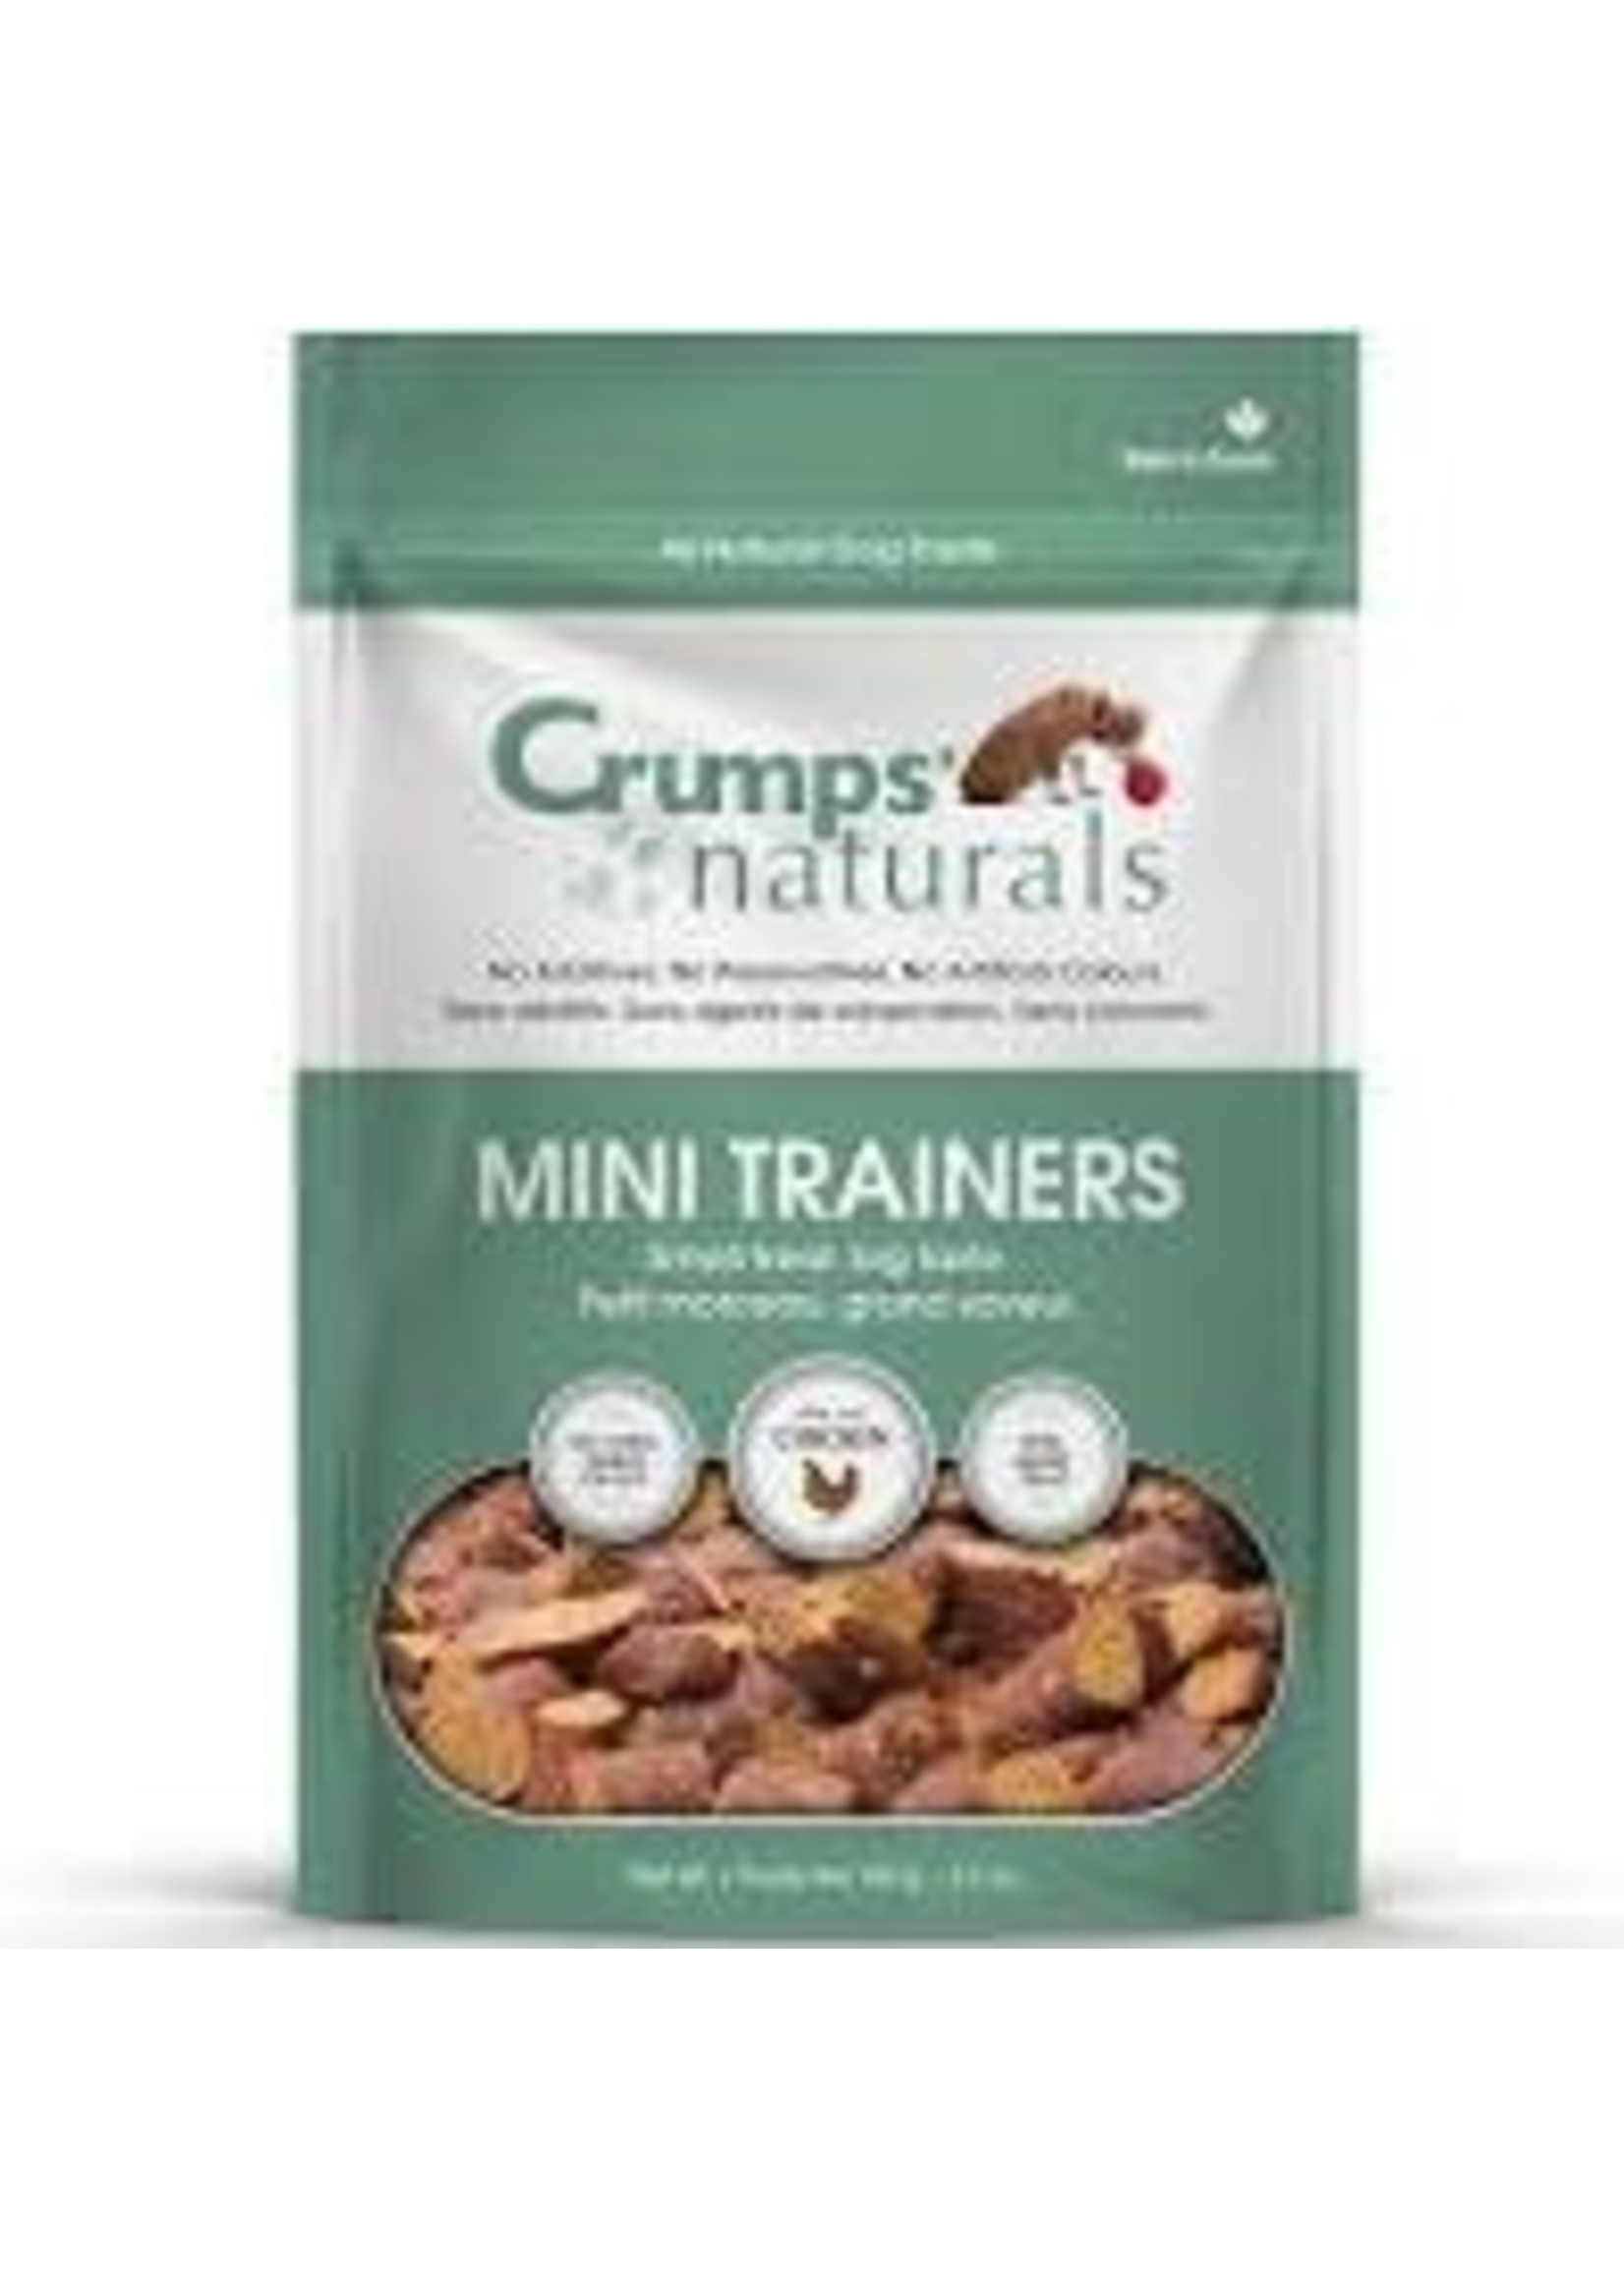 Crumps Naturals Crumps Naturals Mini Trainers 4.2oz